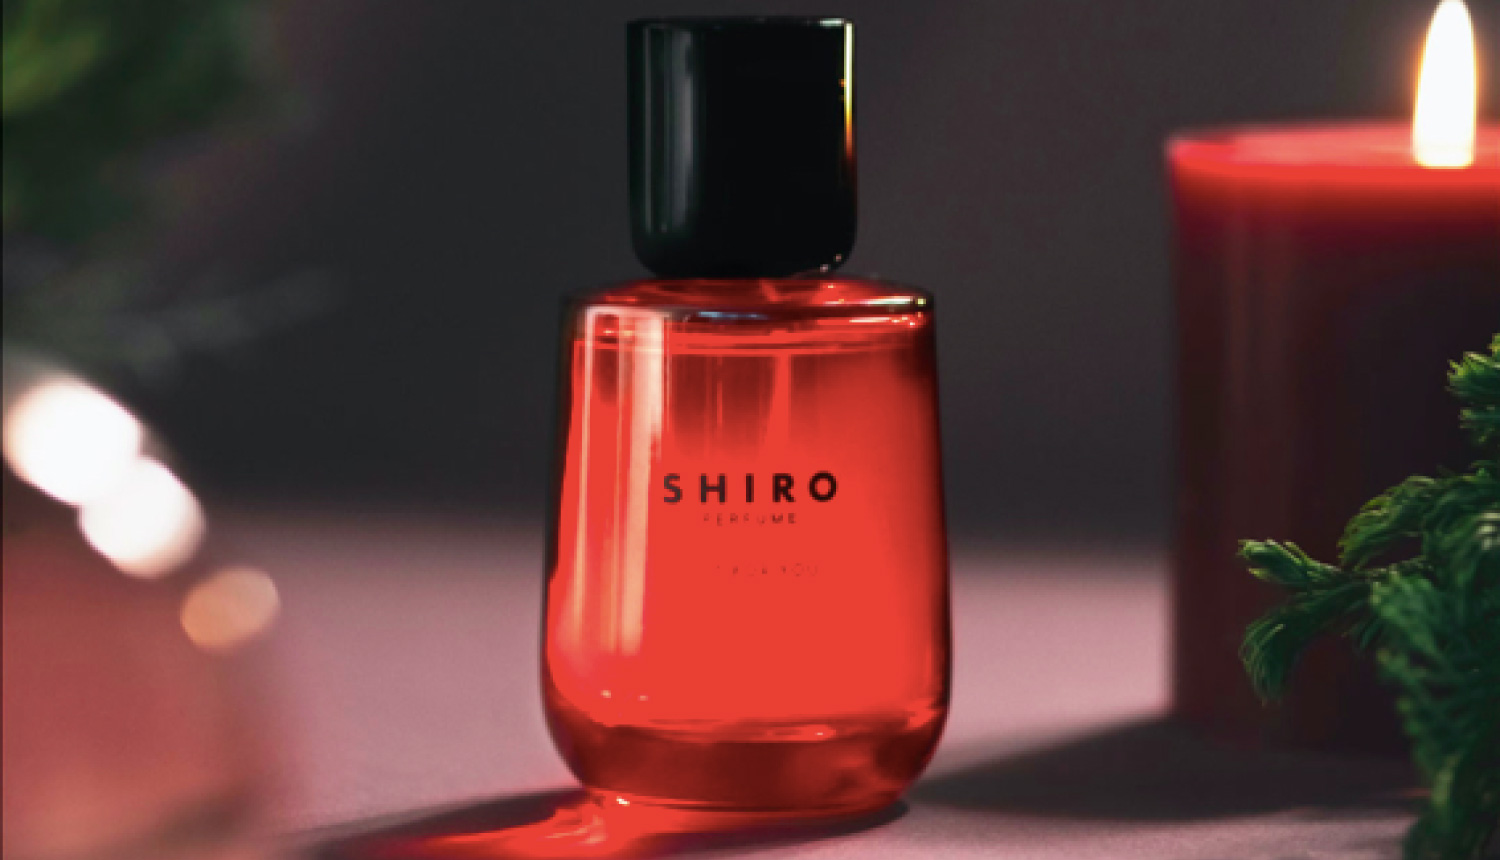 shiro-perfume-%e3%82%b7%e3%83%ad%e9%a6%99%e6%b0%b4-%e7%be%8e%e5%a6%9d-2